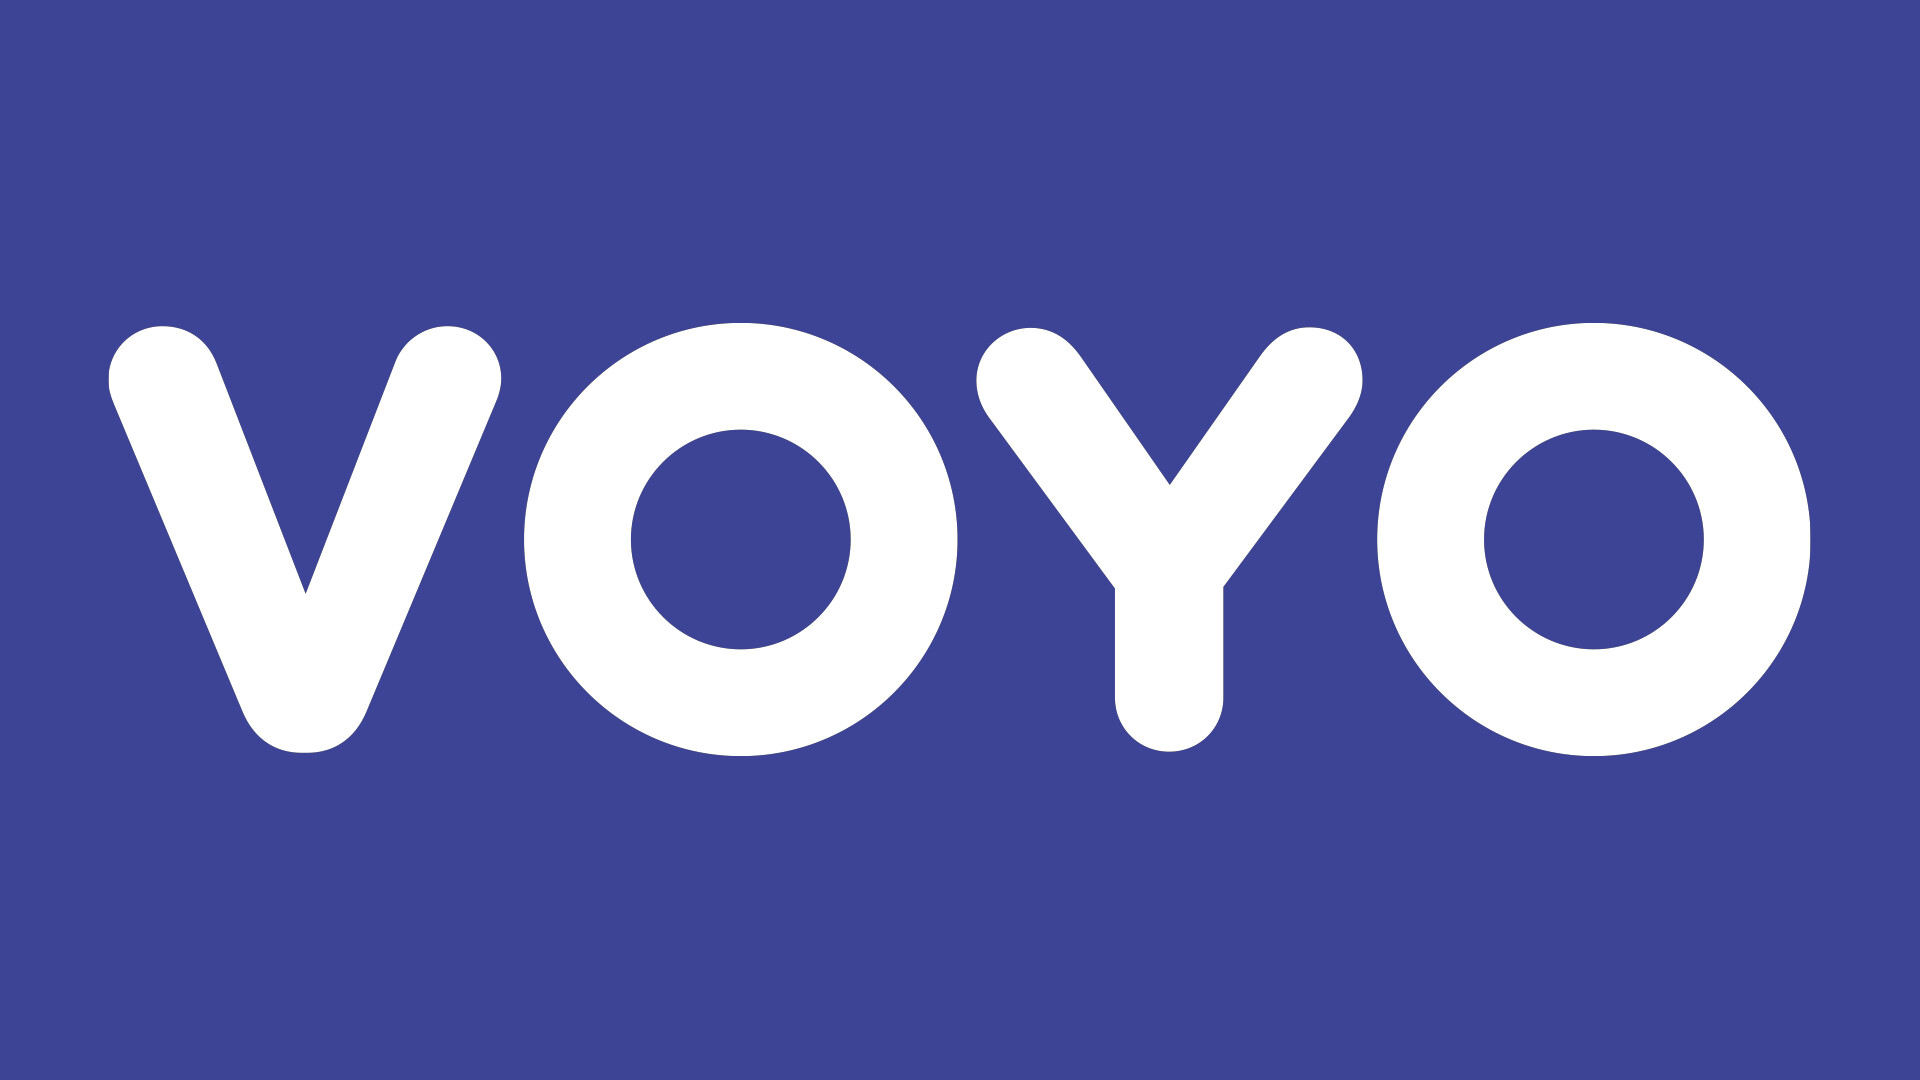 voyo